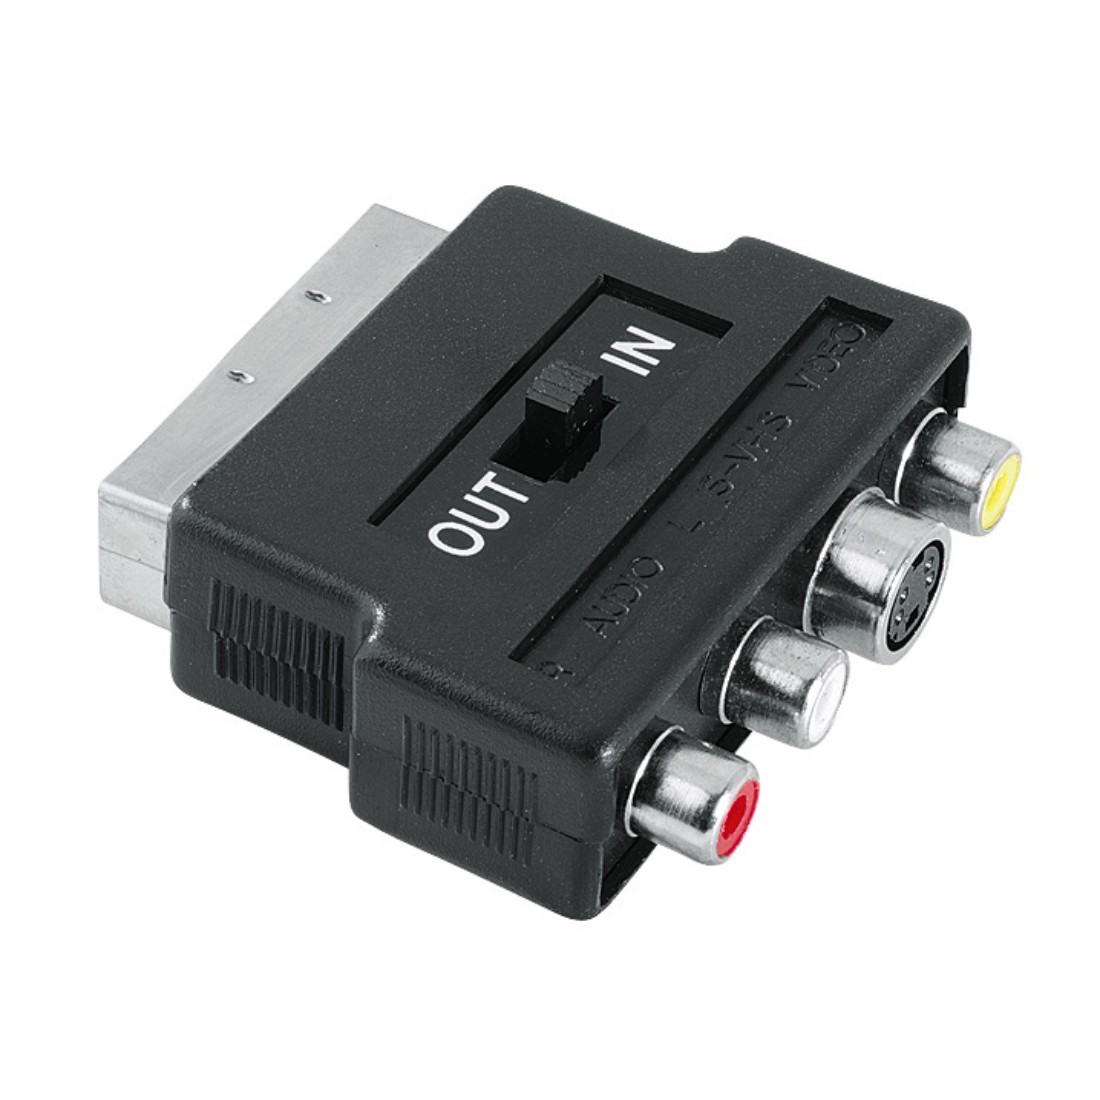 75122238 Hama AV Adapter, S-VHS socket/3 RCA sockets - Scart plug, 4 pins